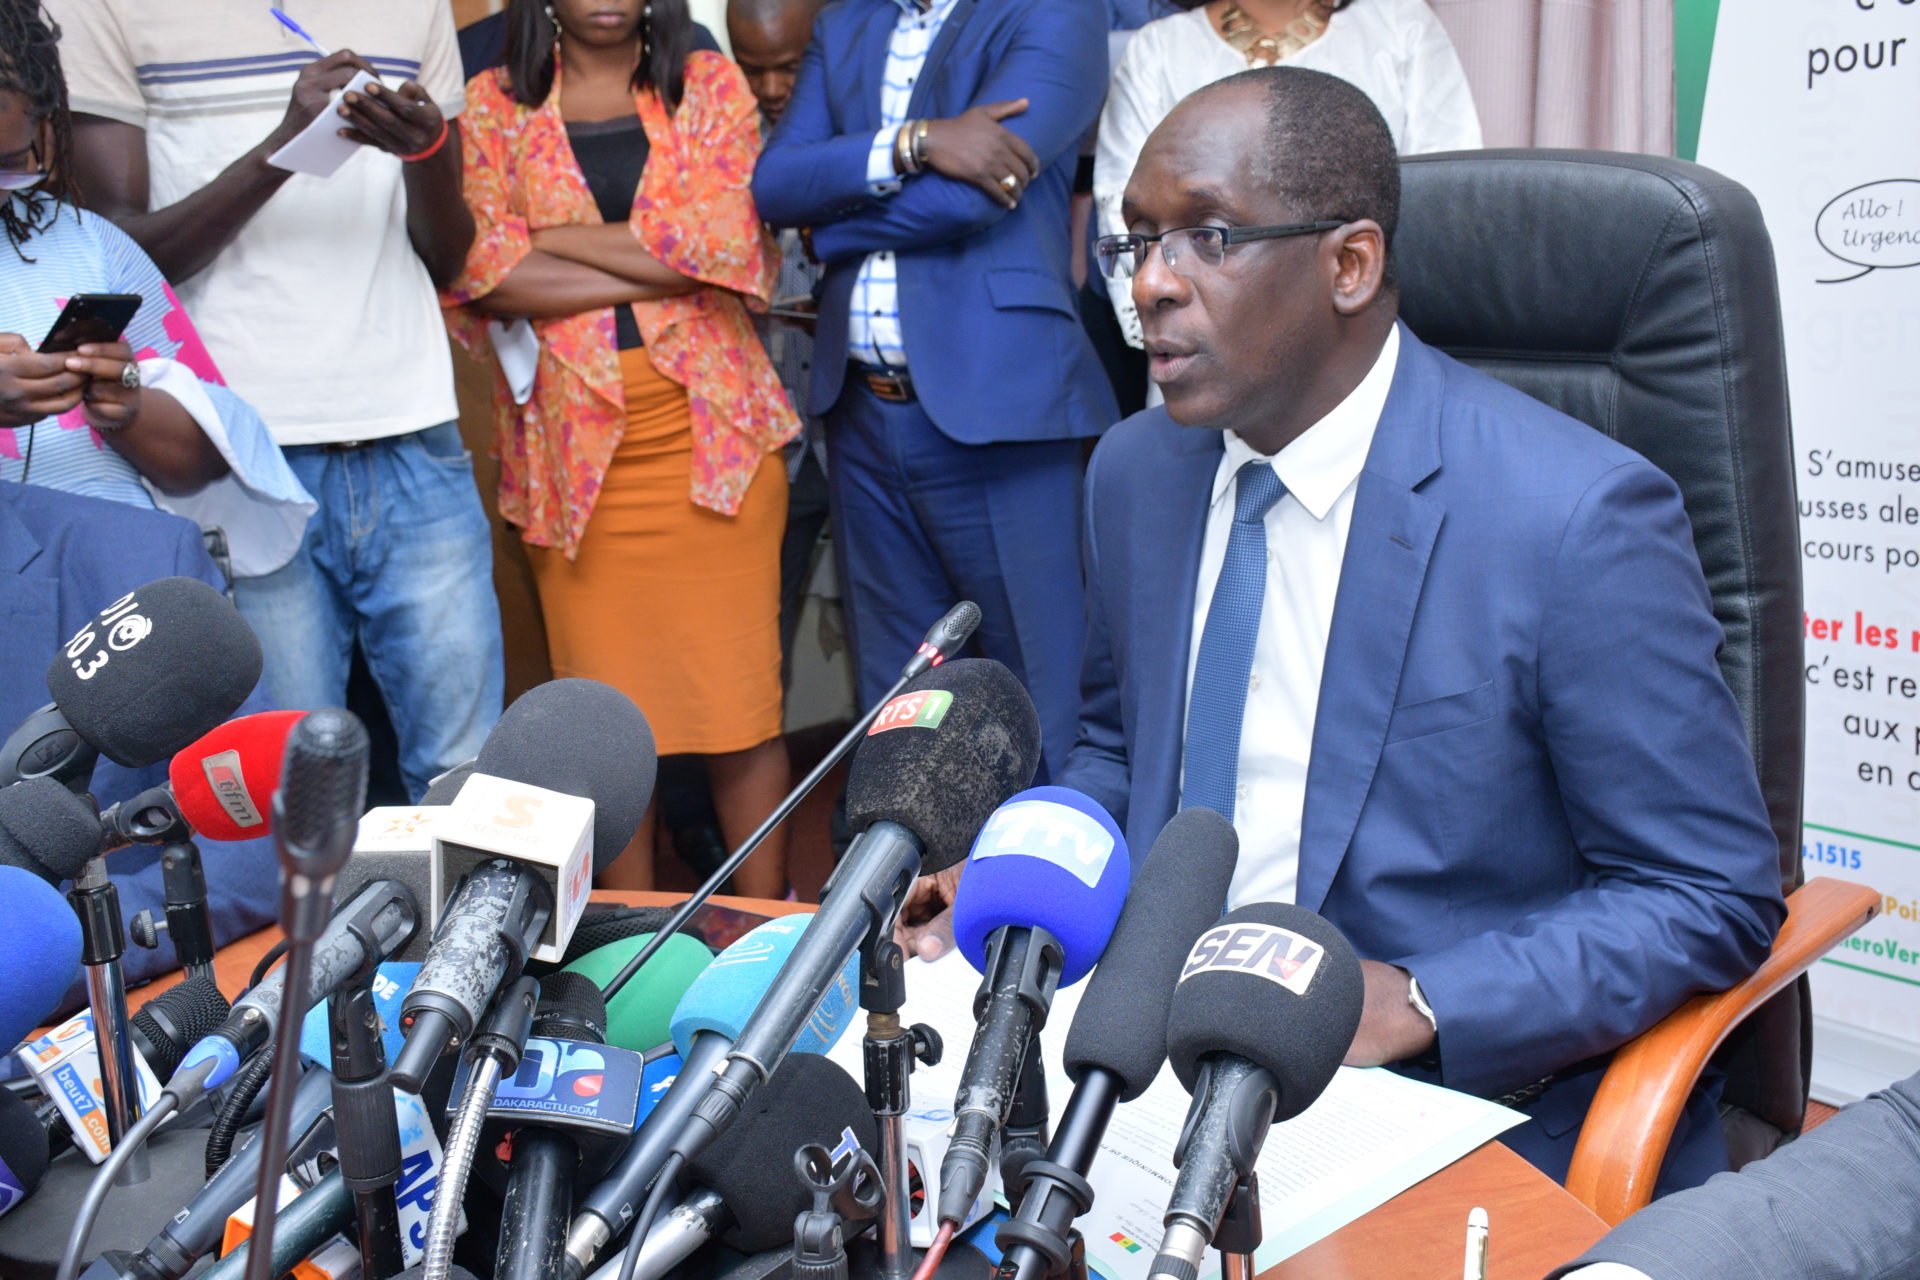 Le ministre Abdoulaye Diouf Sarr alerte: "L'épidémie ne faiblit pas au Sénégal, elle a quintuplé en 30 jours"